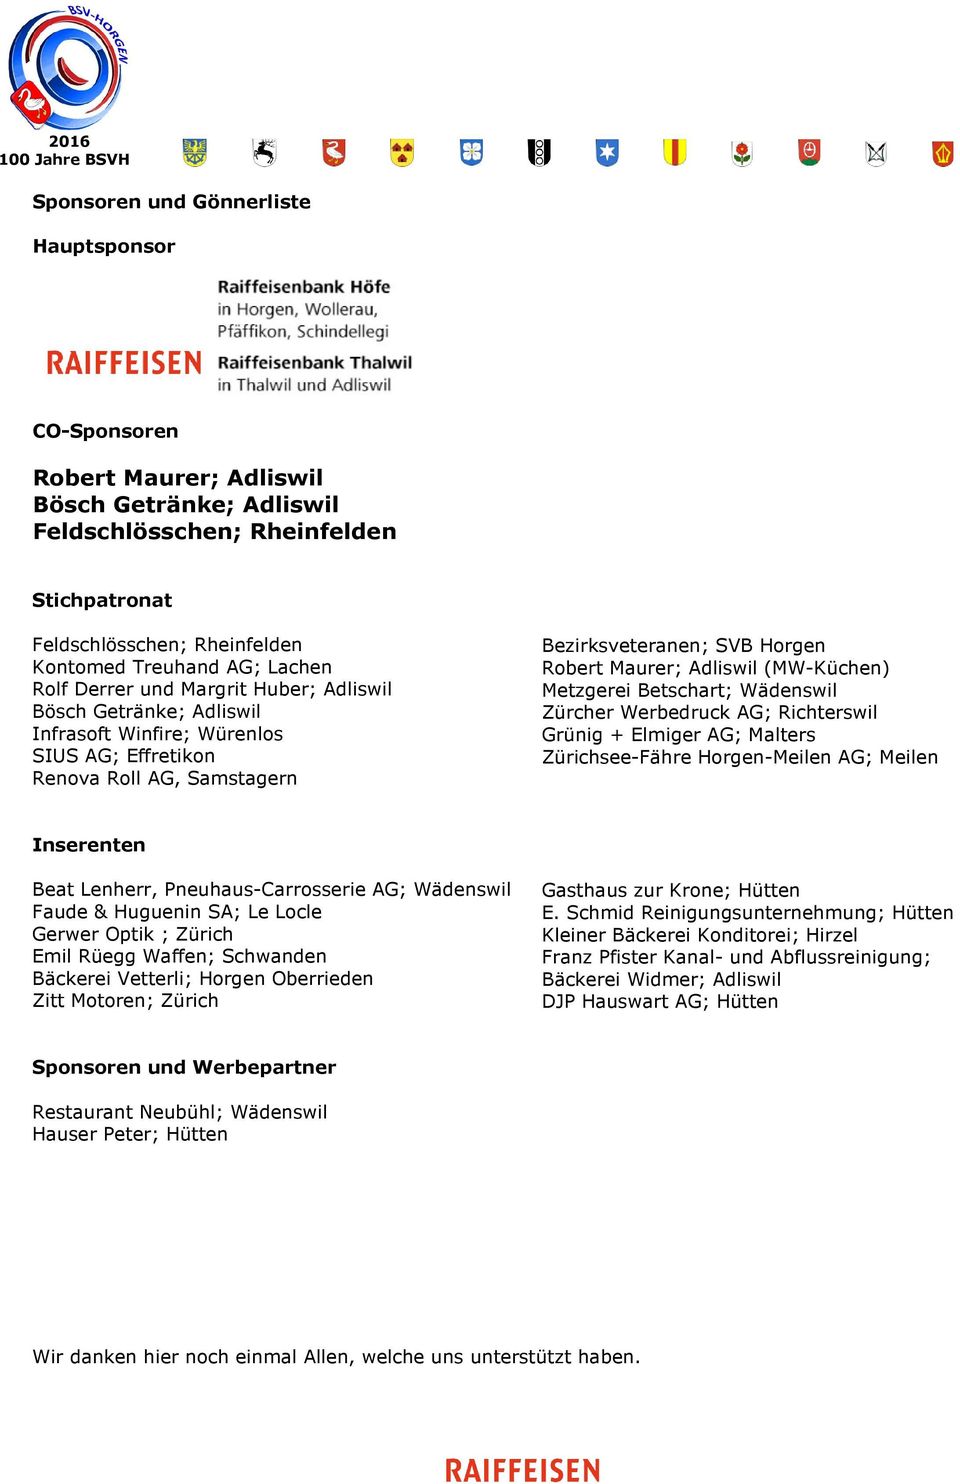 (MW-Küchen) Metzgerei Betschart; Wädenswil Zürcher Werbedruck AG; Richterswil Grünig + Elmiger AG; Malters Zürichsee-Fähre Horgen-Meilen AG; Meilen Inserenten Beat Lenherr, Pneuhaus-Carrosserie AG;